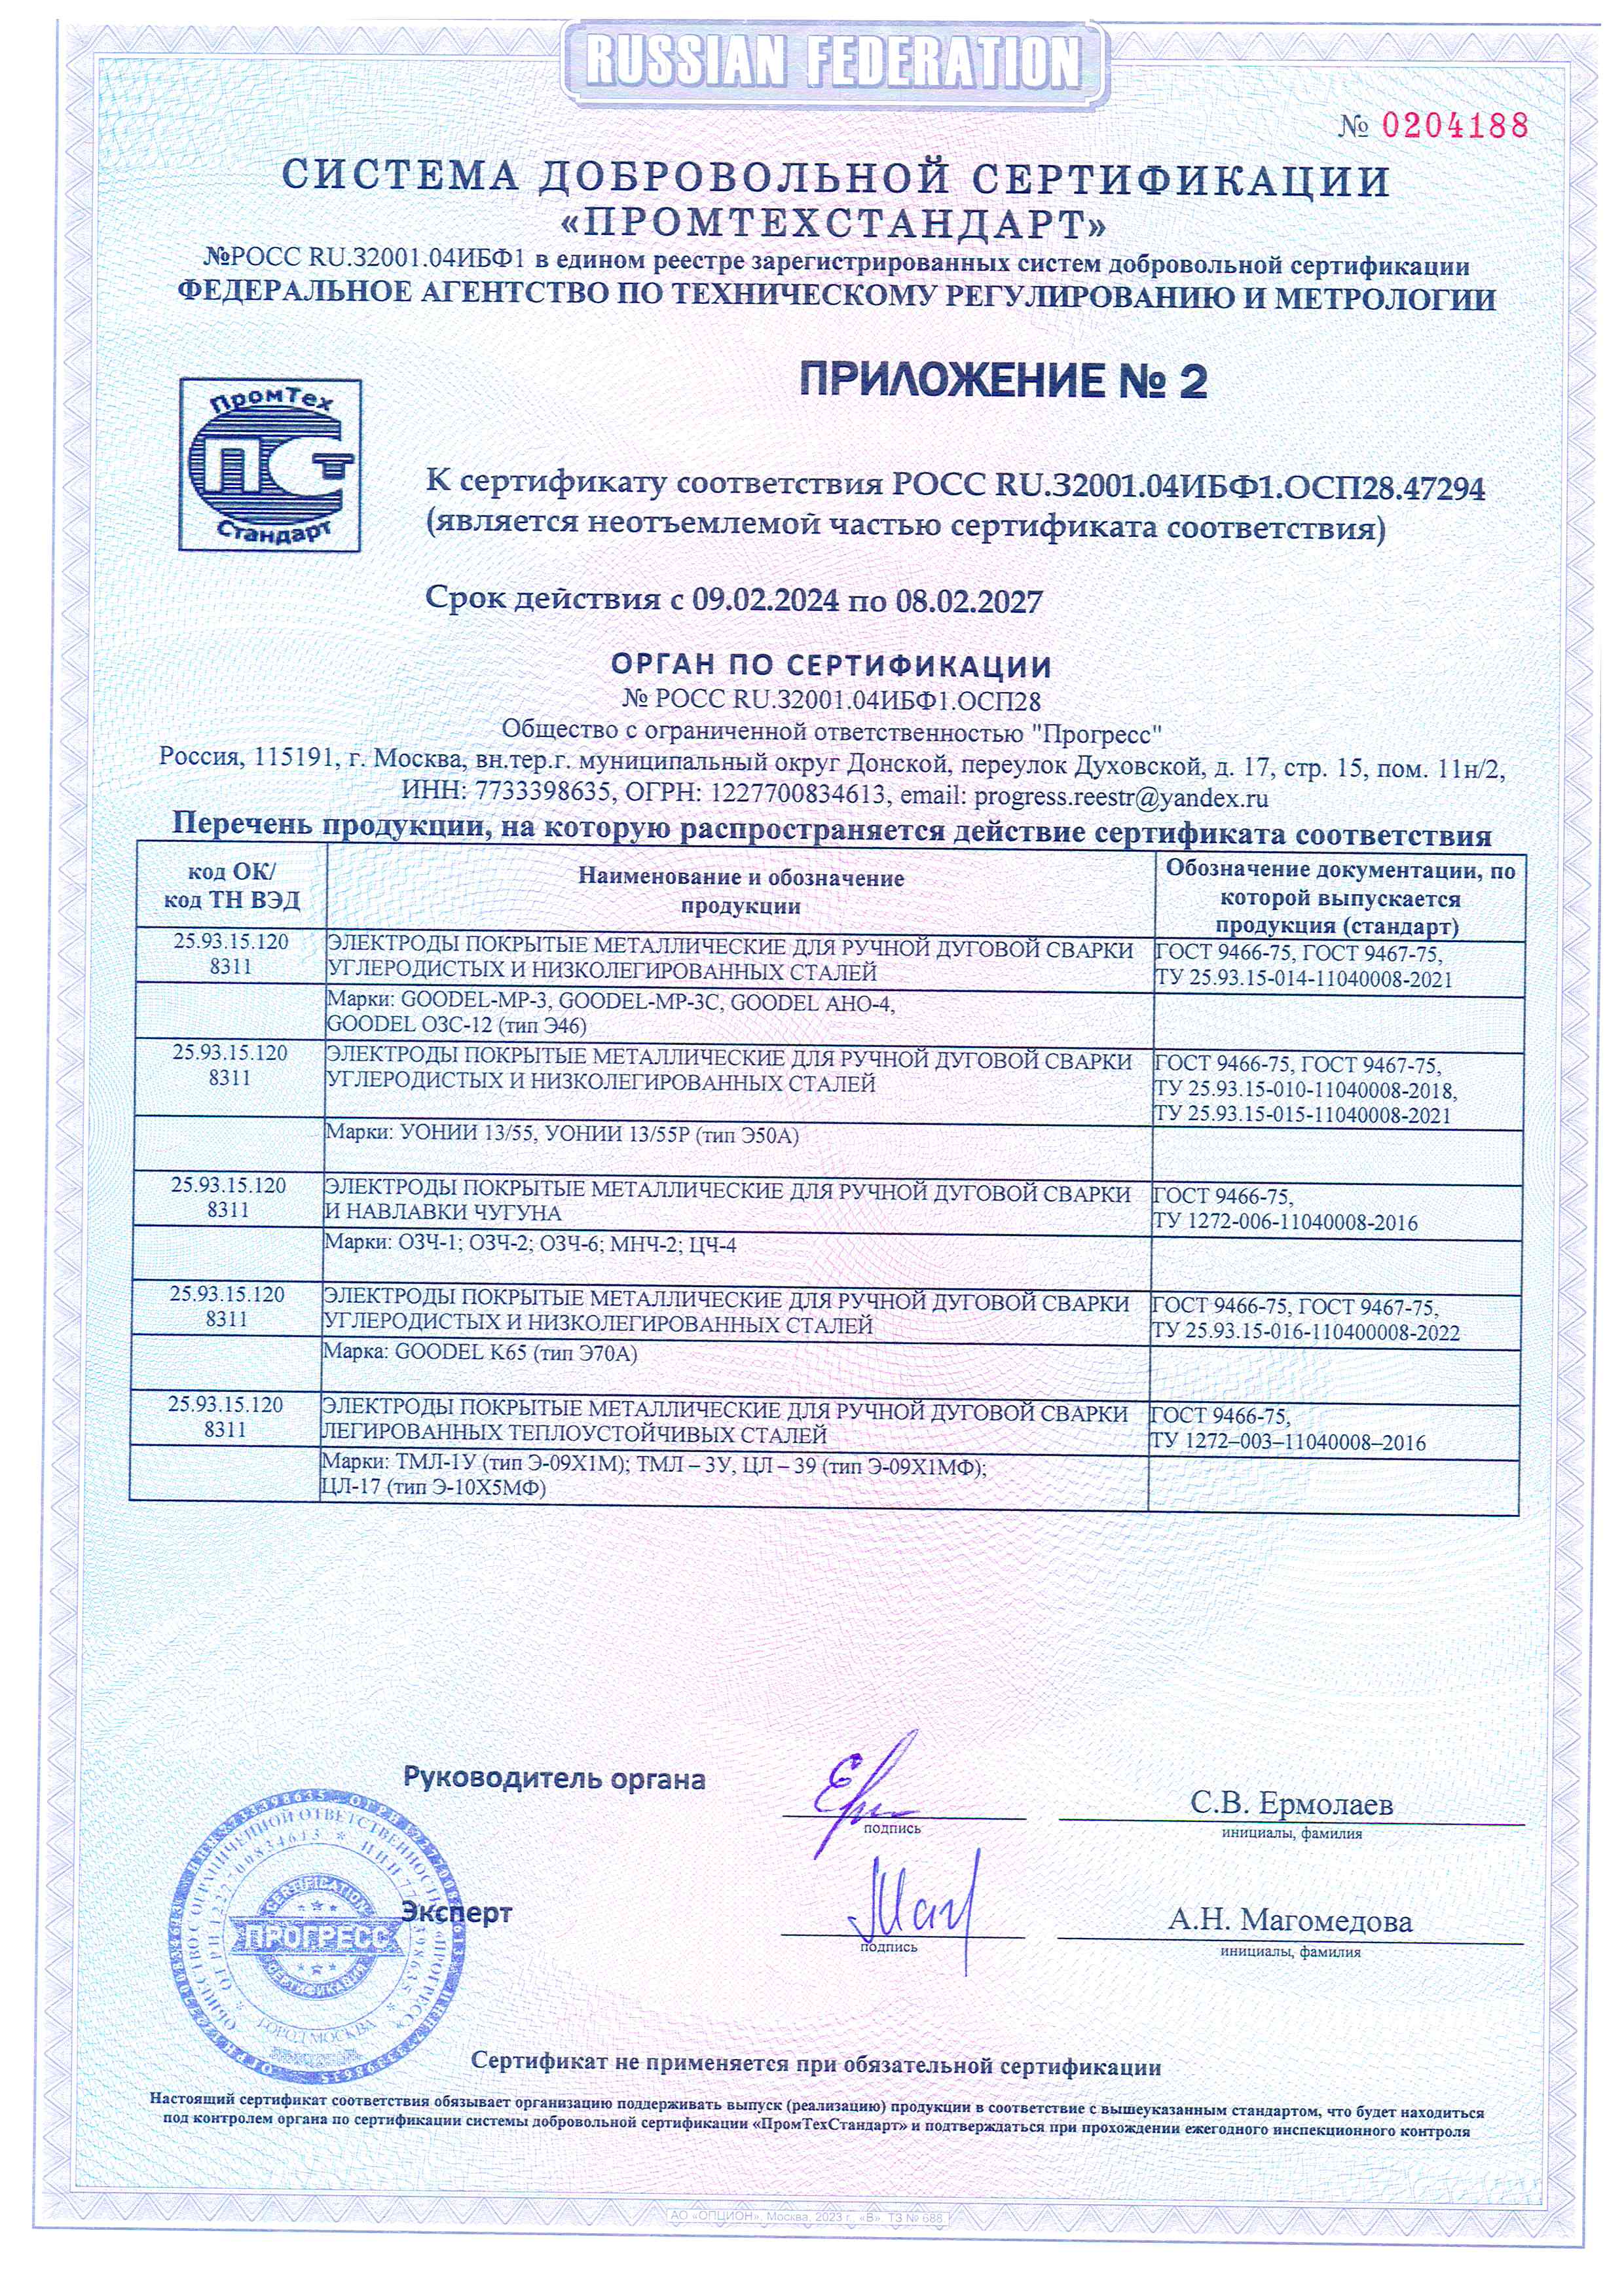 ПромТехСтандарт Сертификат